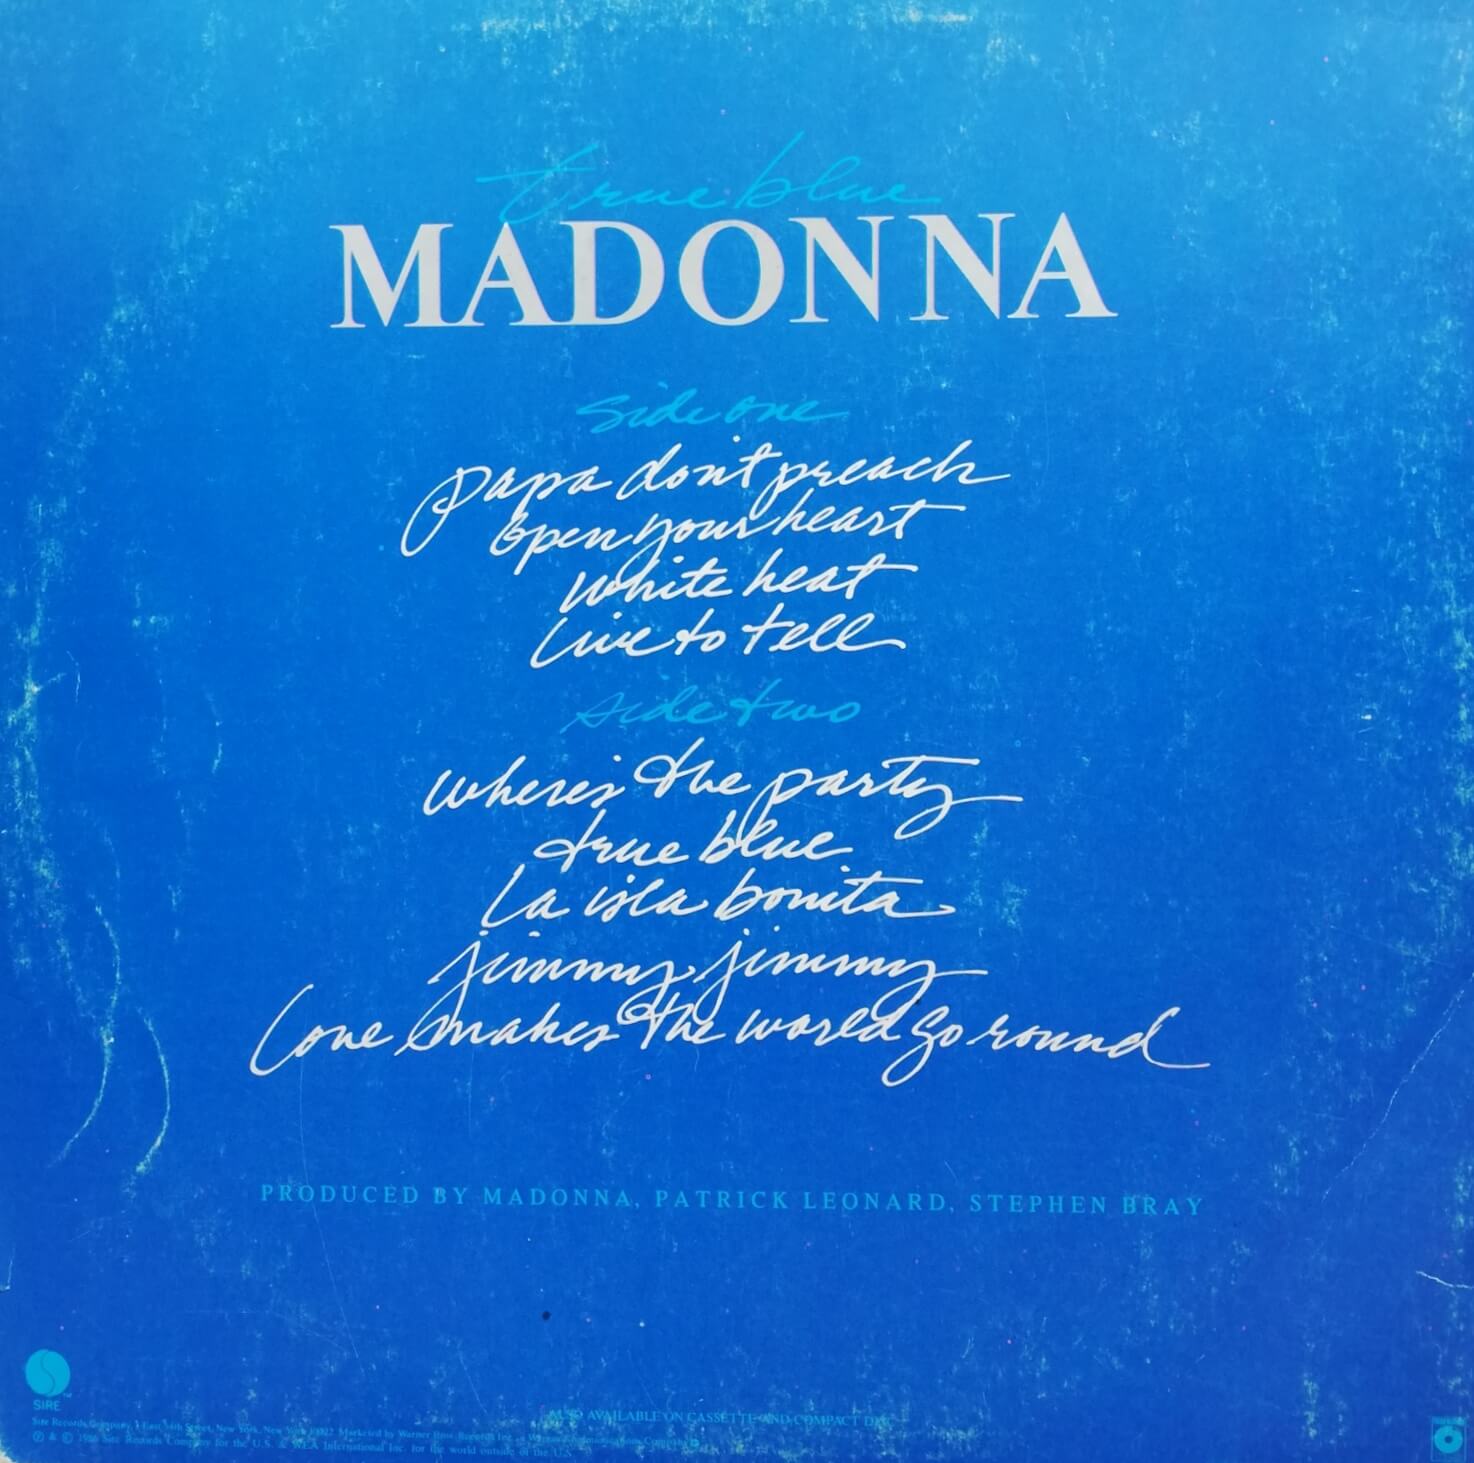 Okładka płyty winylowej artysty Madonna o tytule TRUE BLUE